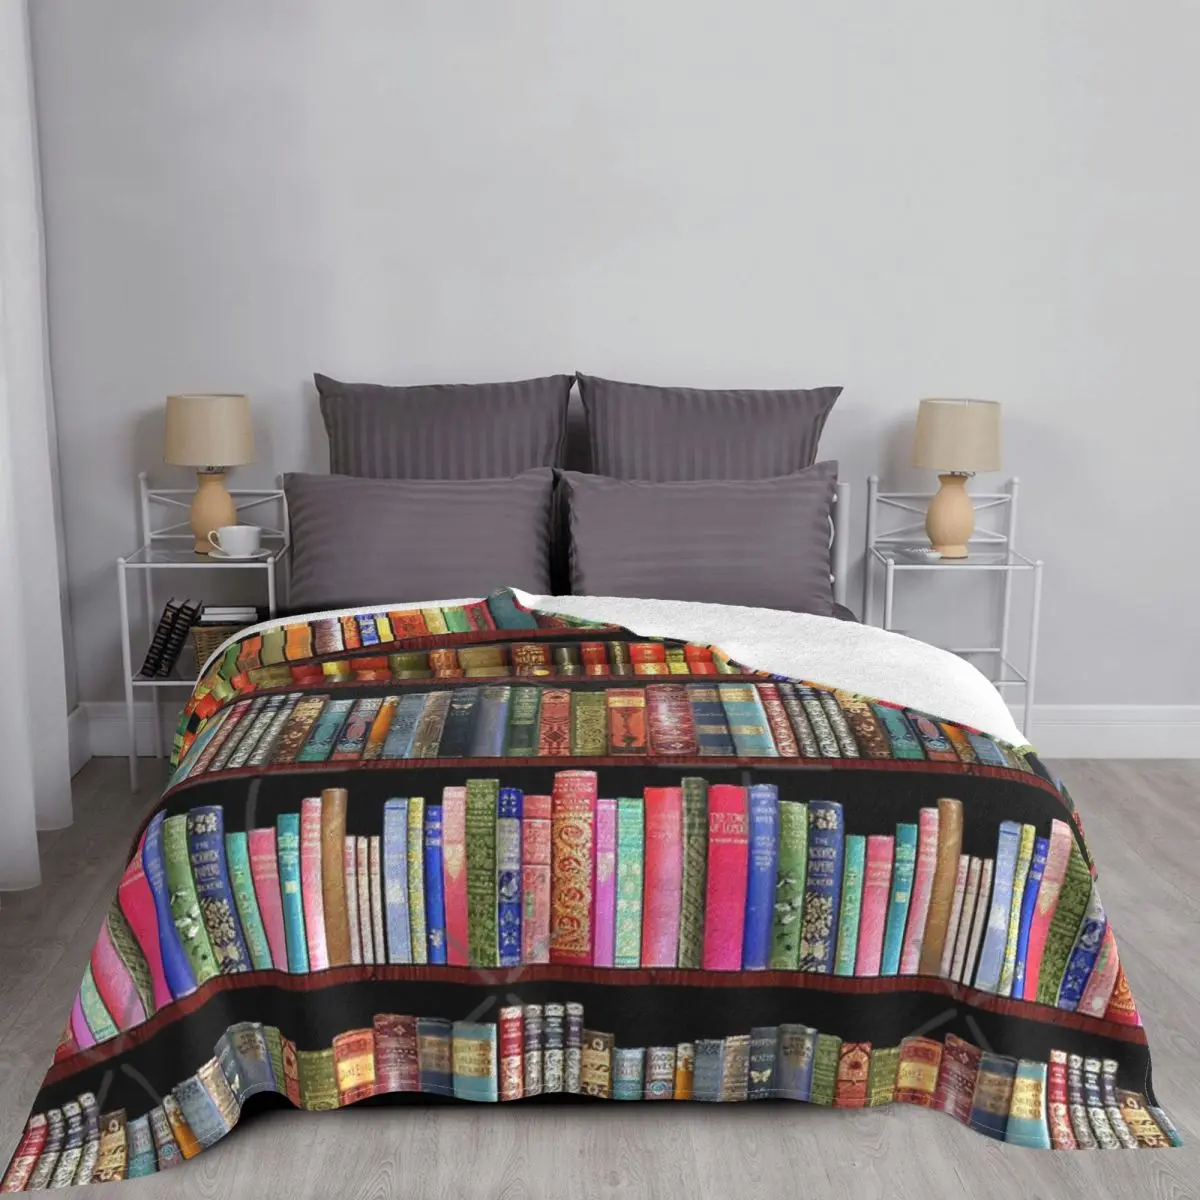 

Jane Austen Antique Books British Antique Books Throw Blanket Bedspread Terry Cotton Beds All Sofas Flannel Plaid Beige